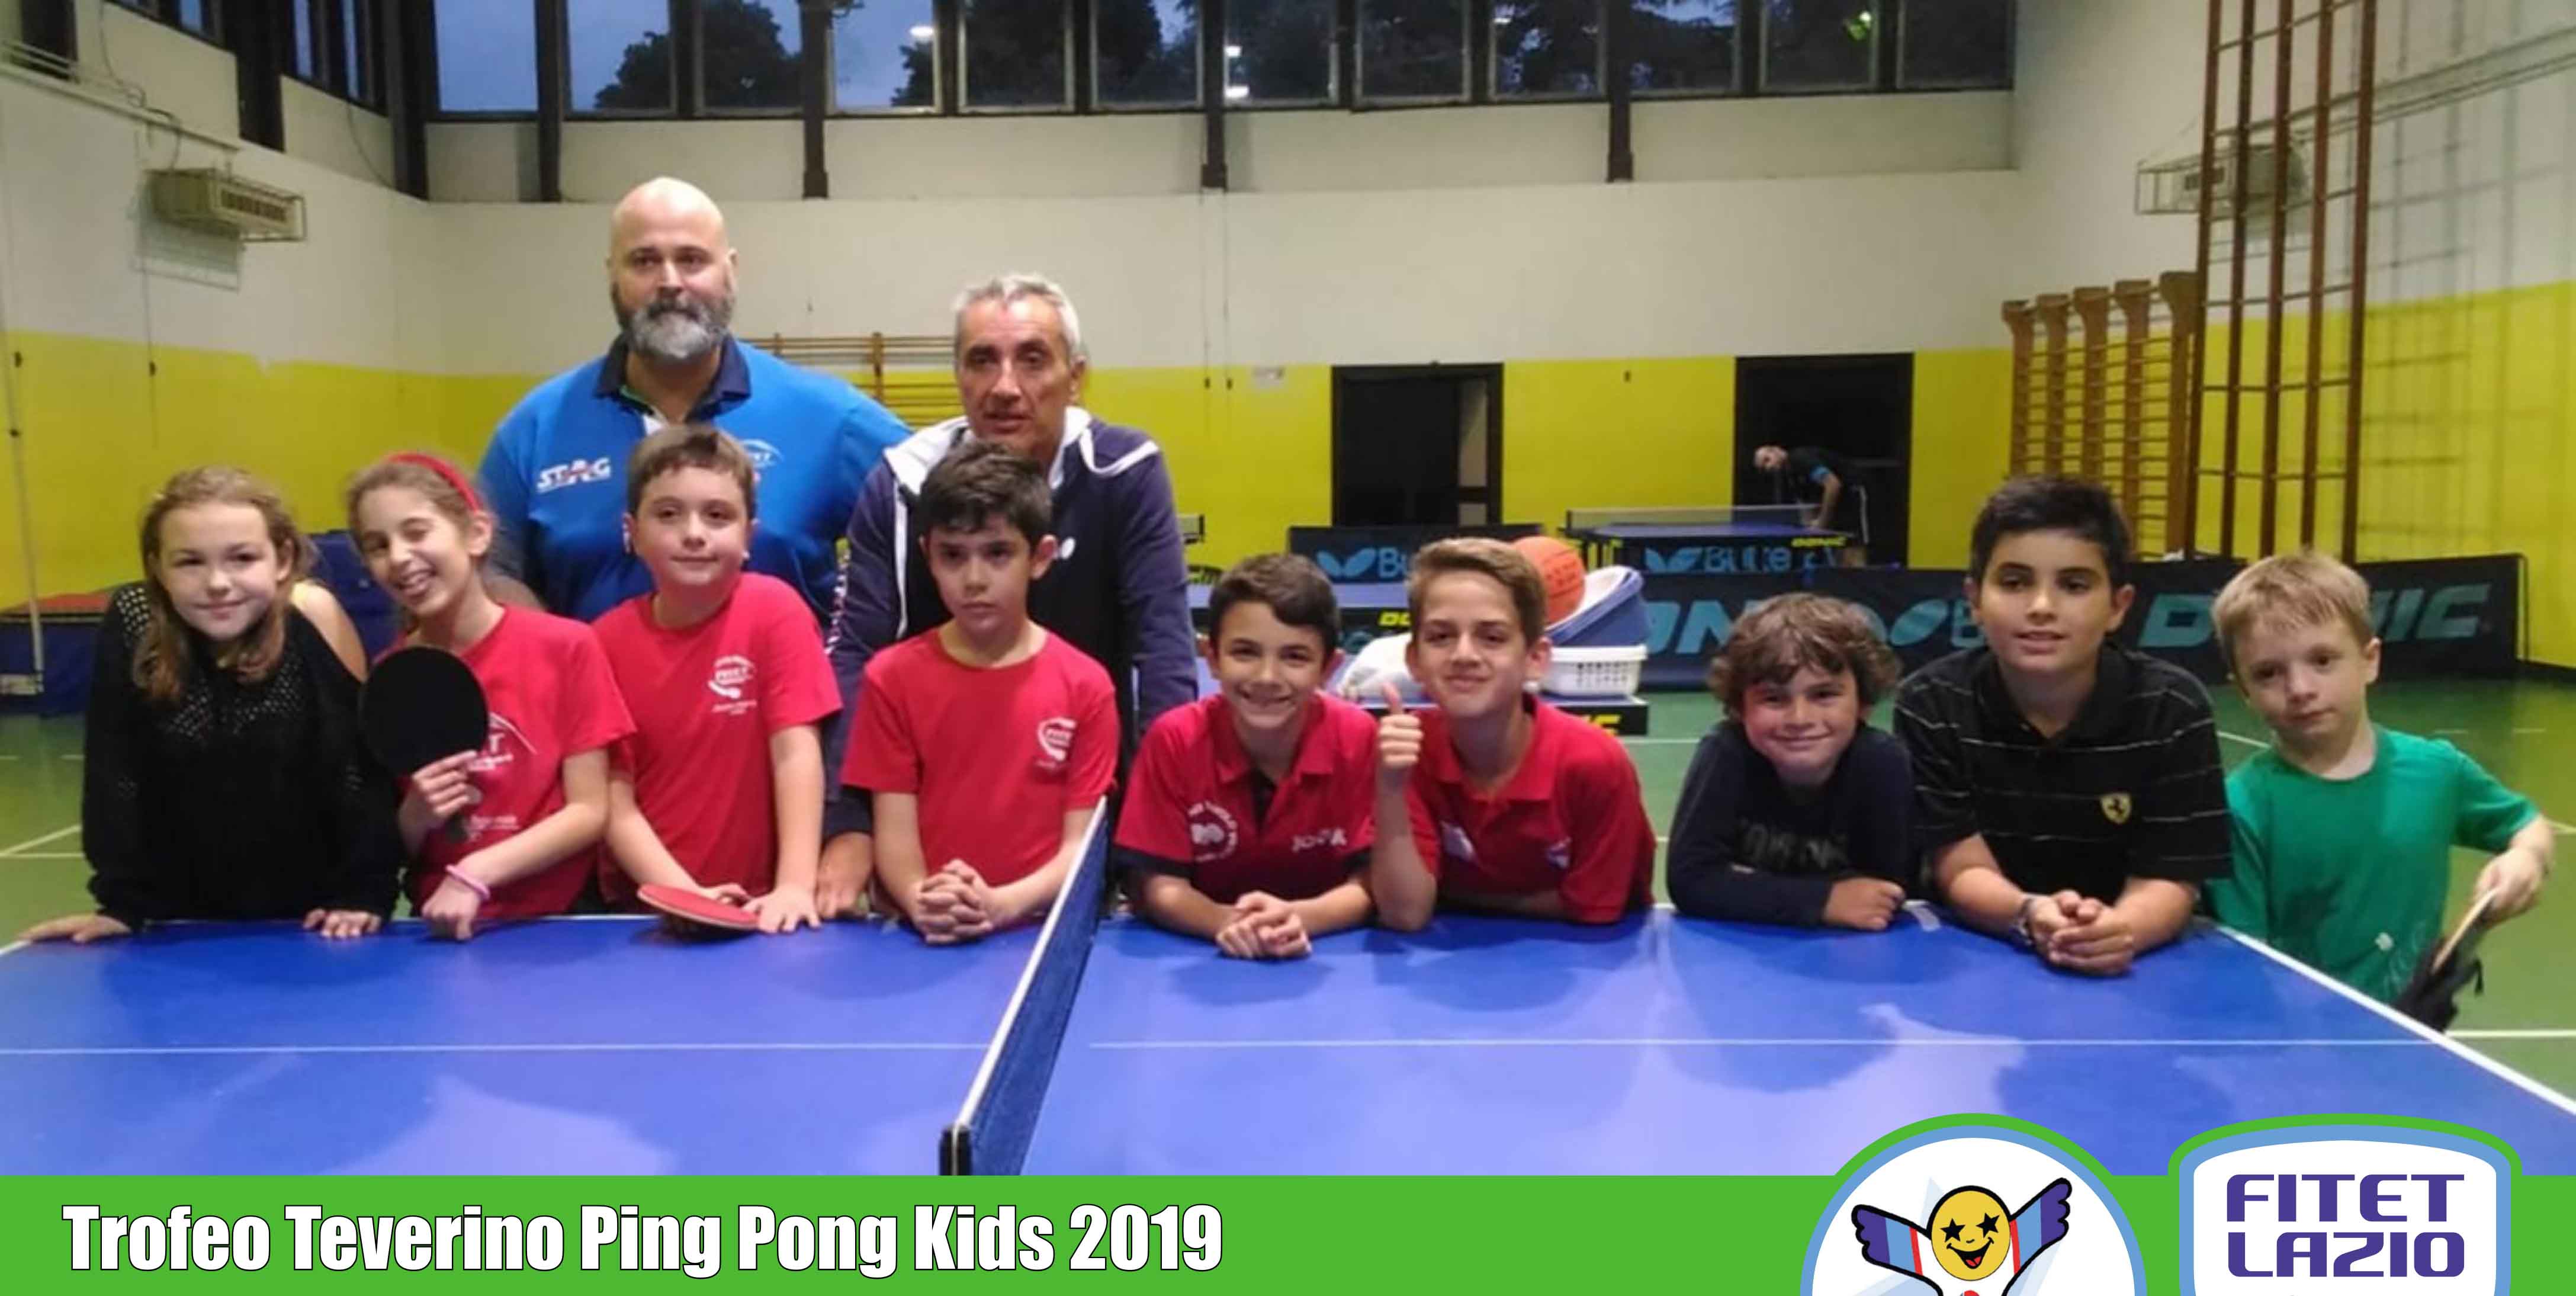 Ping Pong Kids Lazio 2019 ok